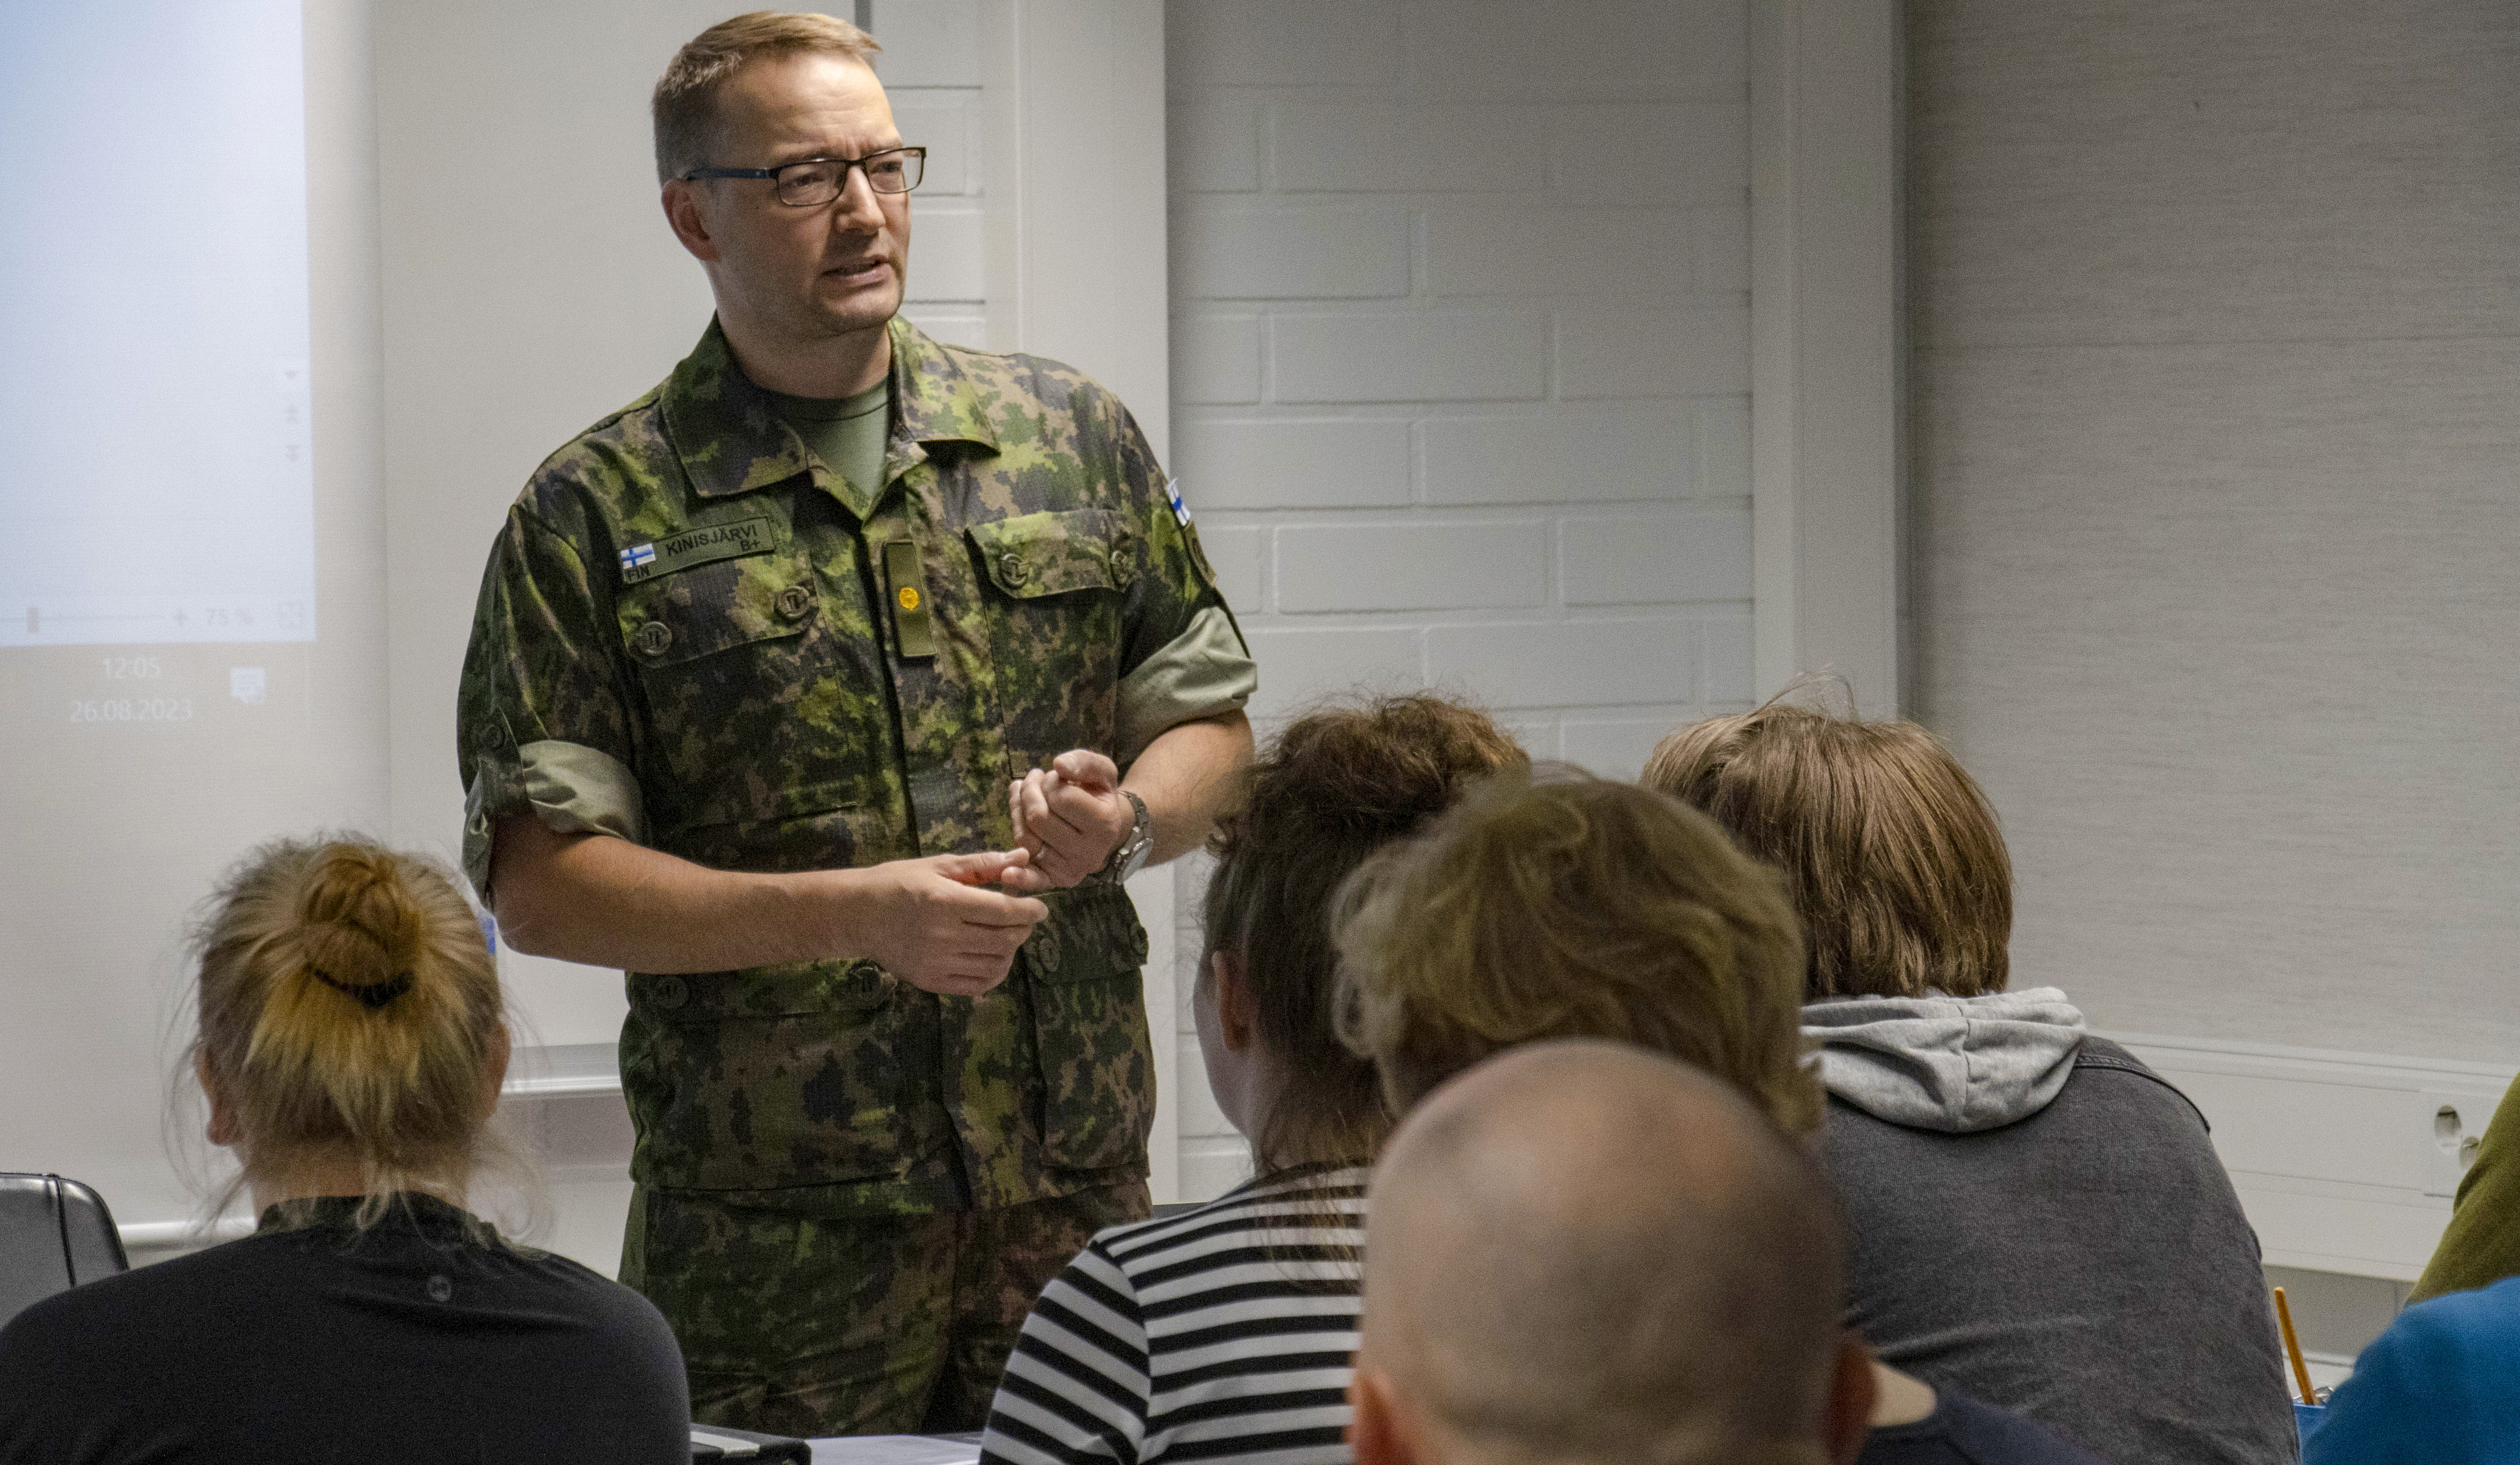 Major Karri Kinisjärvi håller en lektion för reservister.